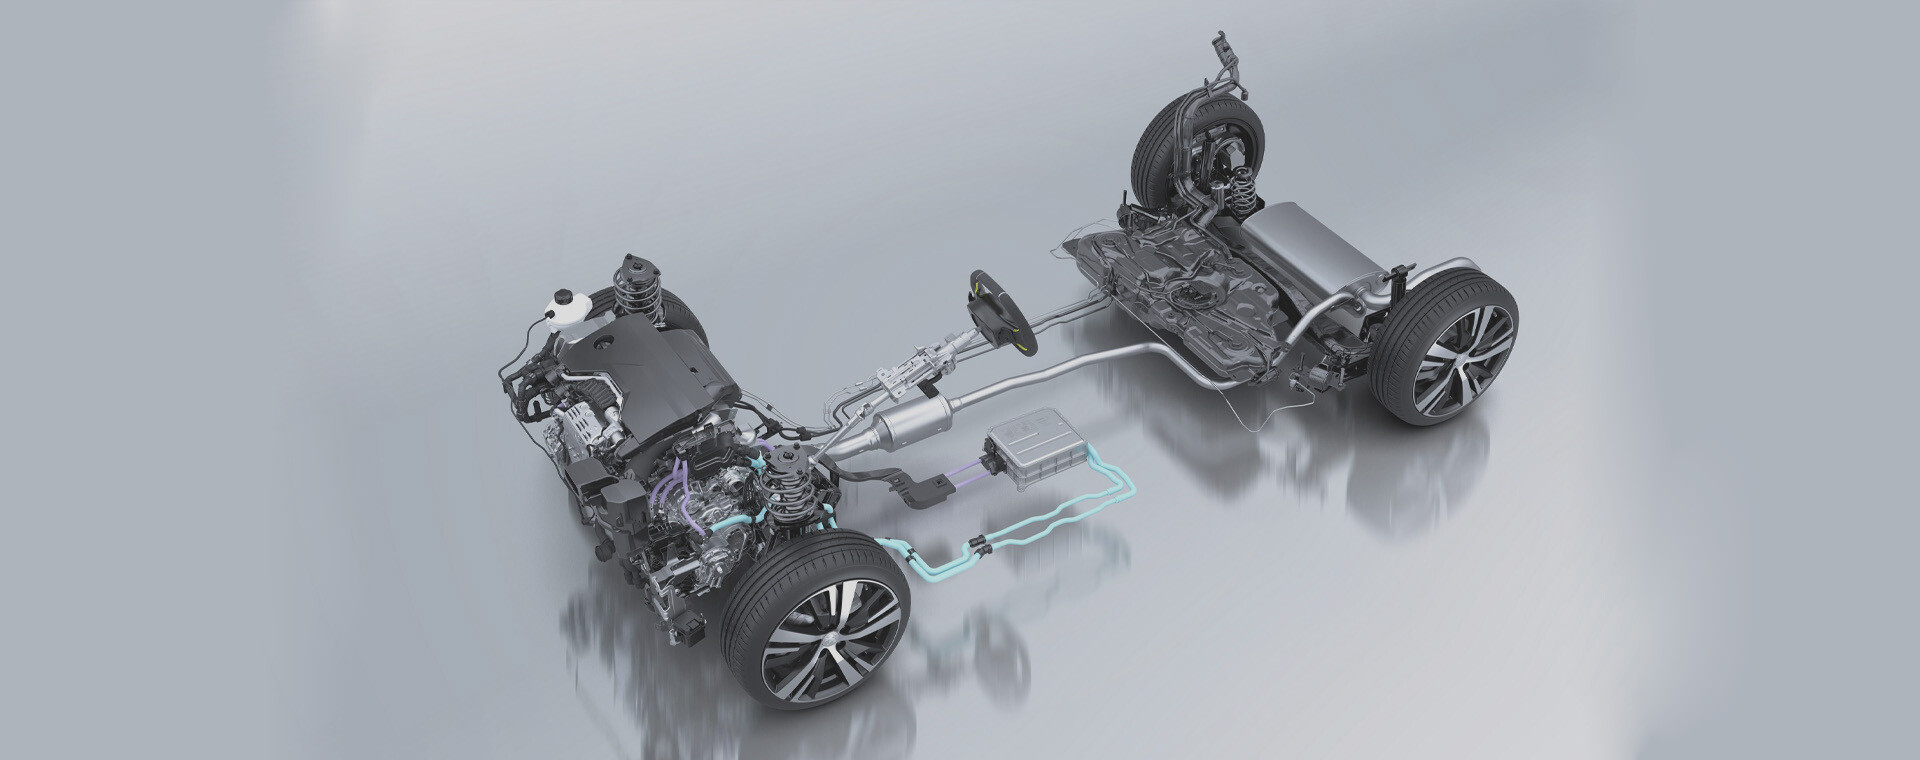 Új megbízható és takarékos hibrid hajtáslánc a Peugeot-tól